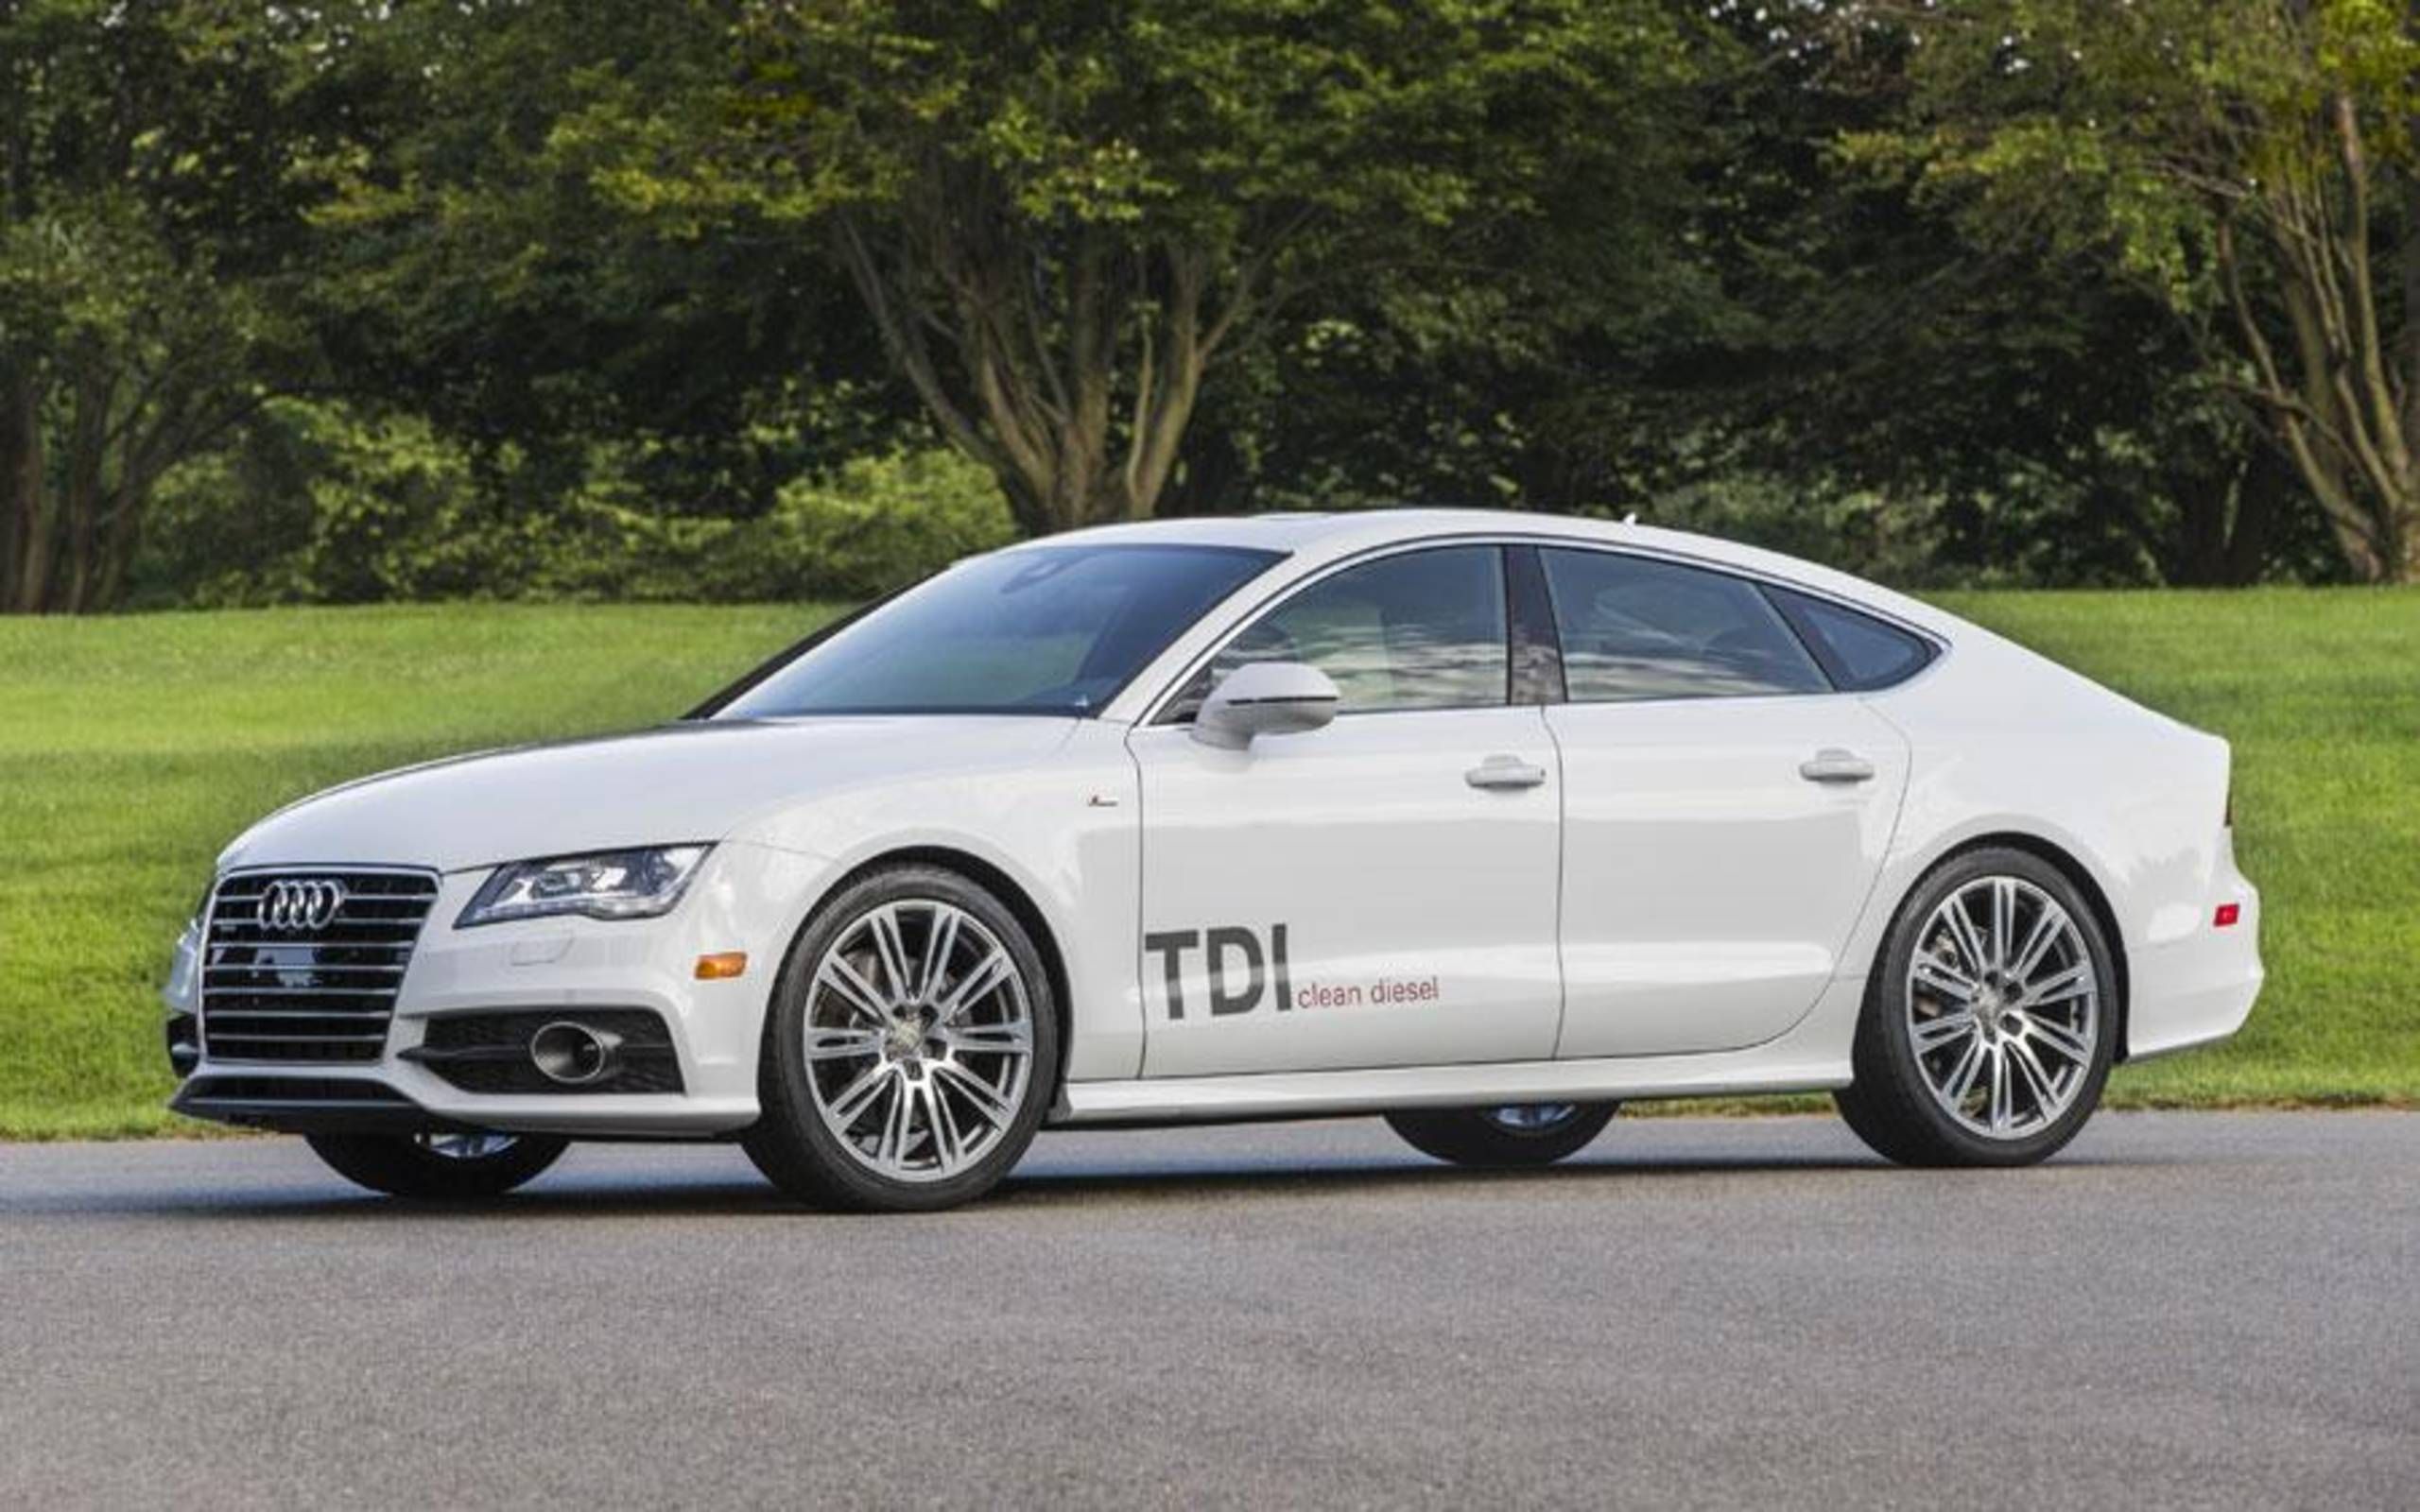 2014 Audi A7 3.0 TDI Prestige review notes